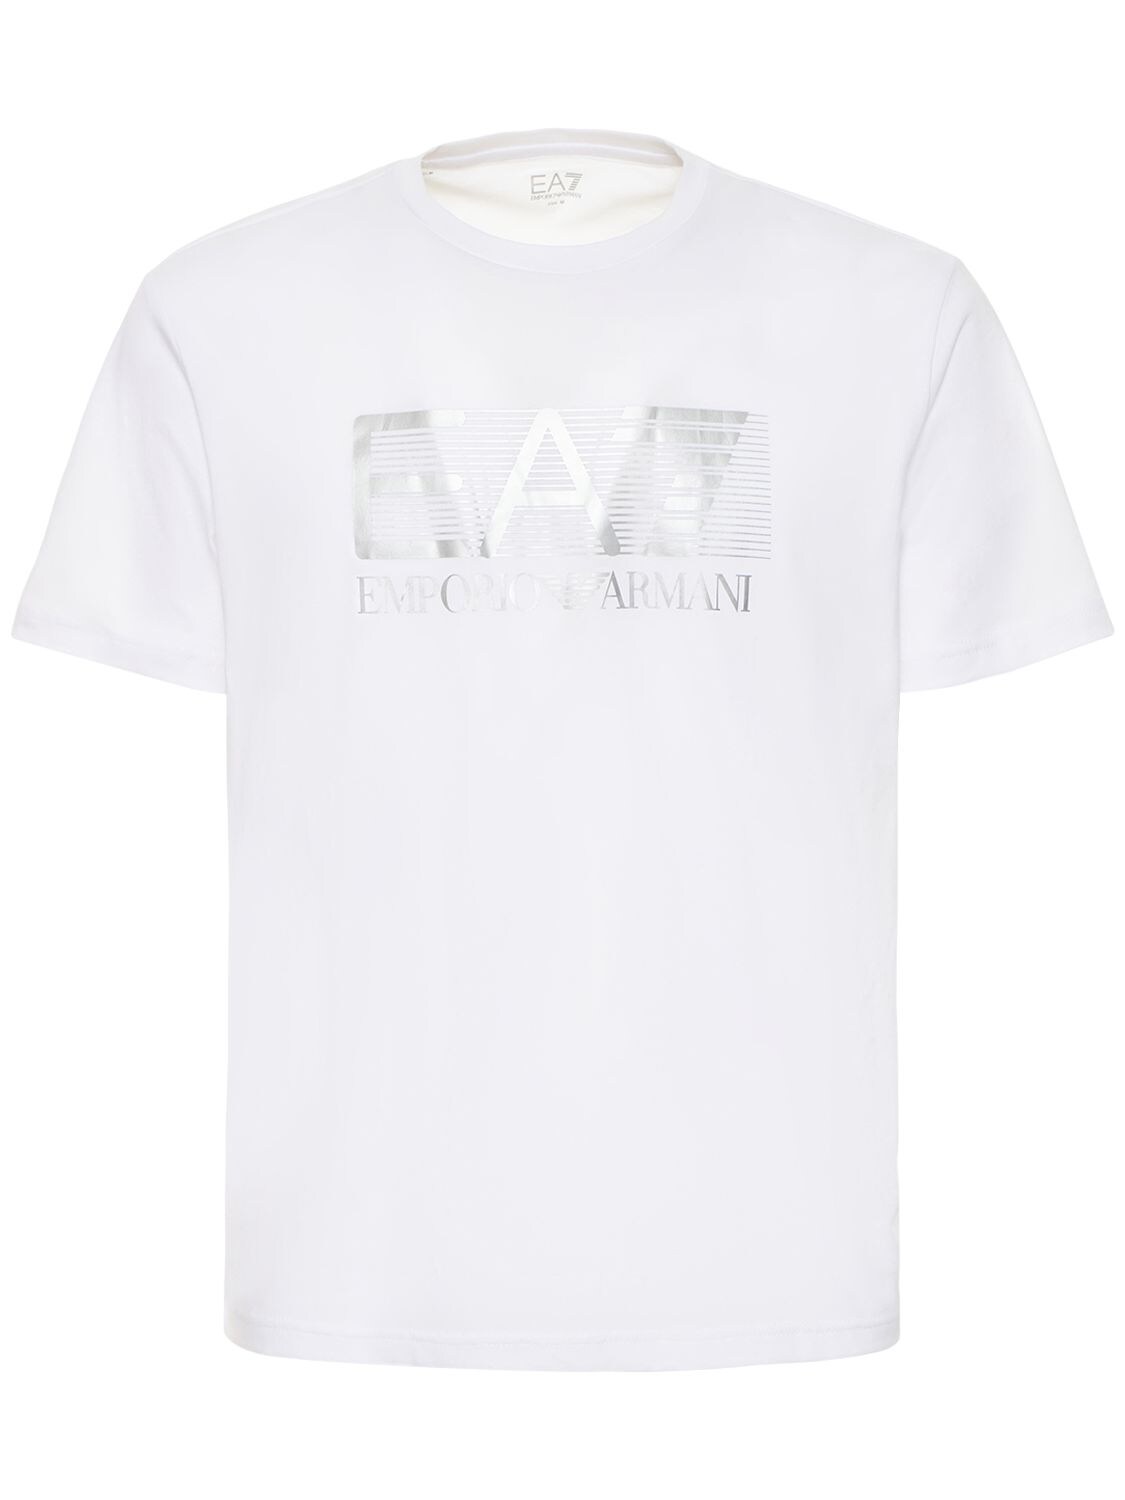 T-shirt En Jersey De Coton Visibility - EA7 EMPORIO ARMANI - Modalova